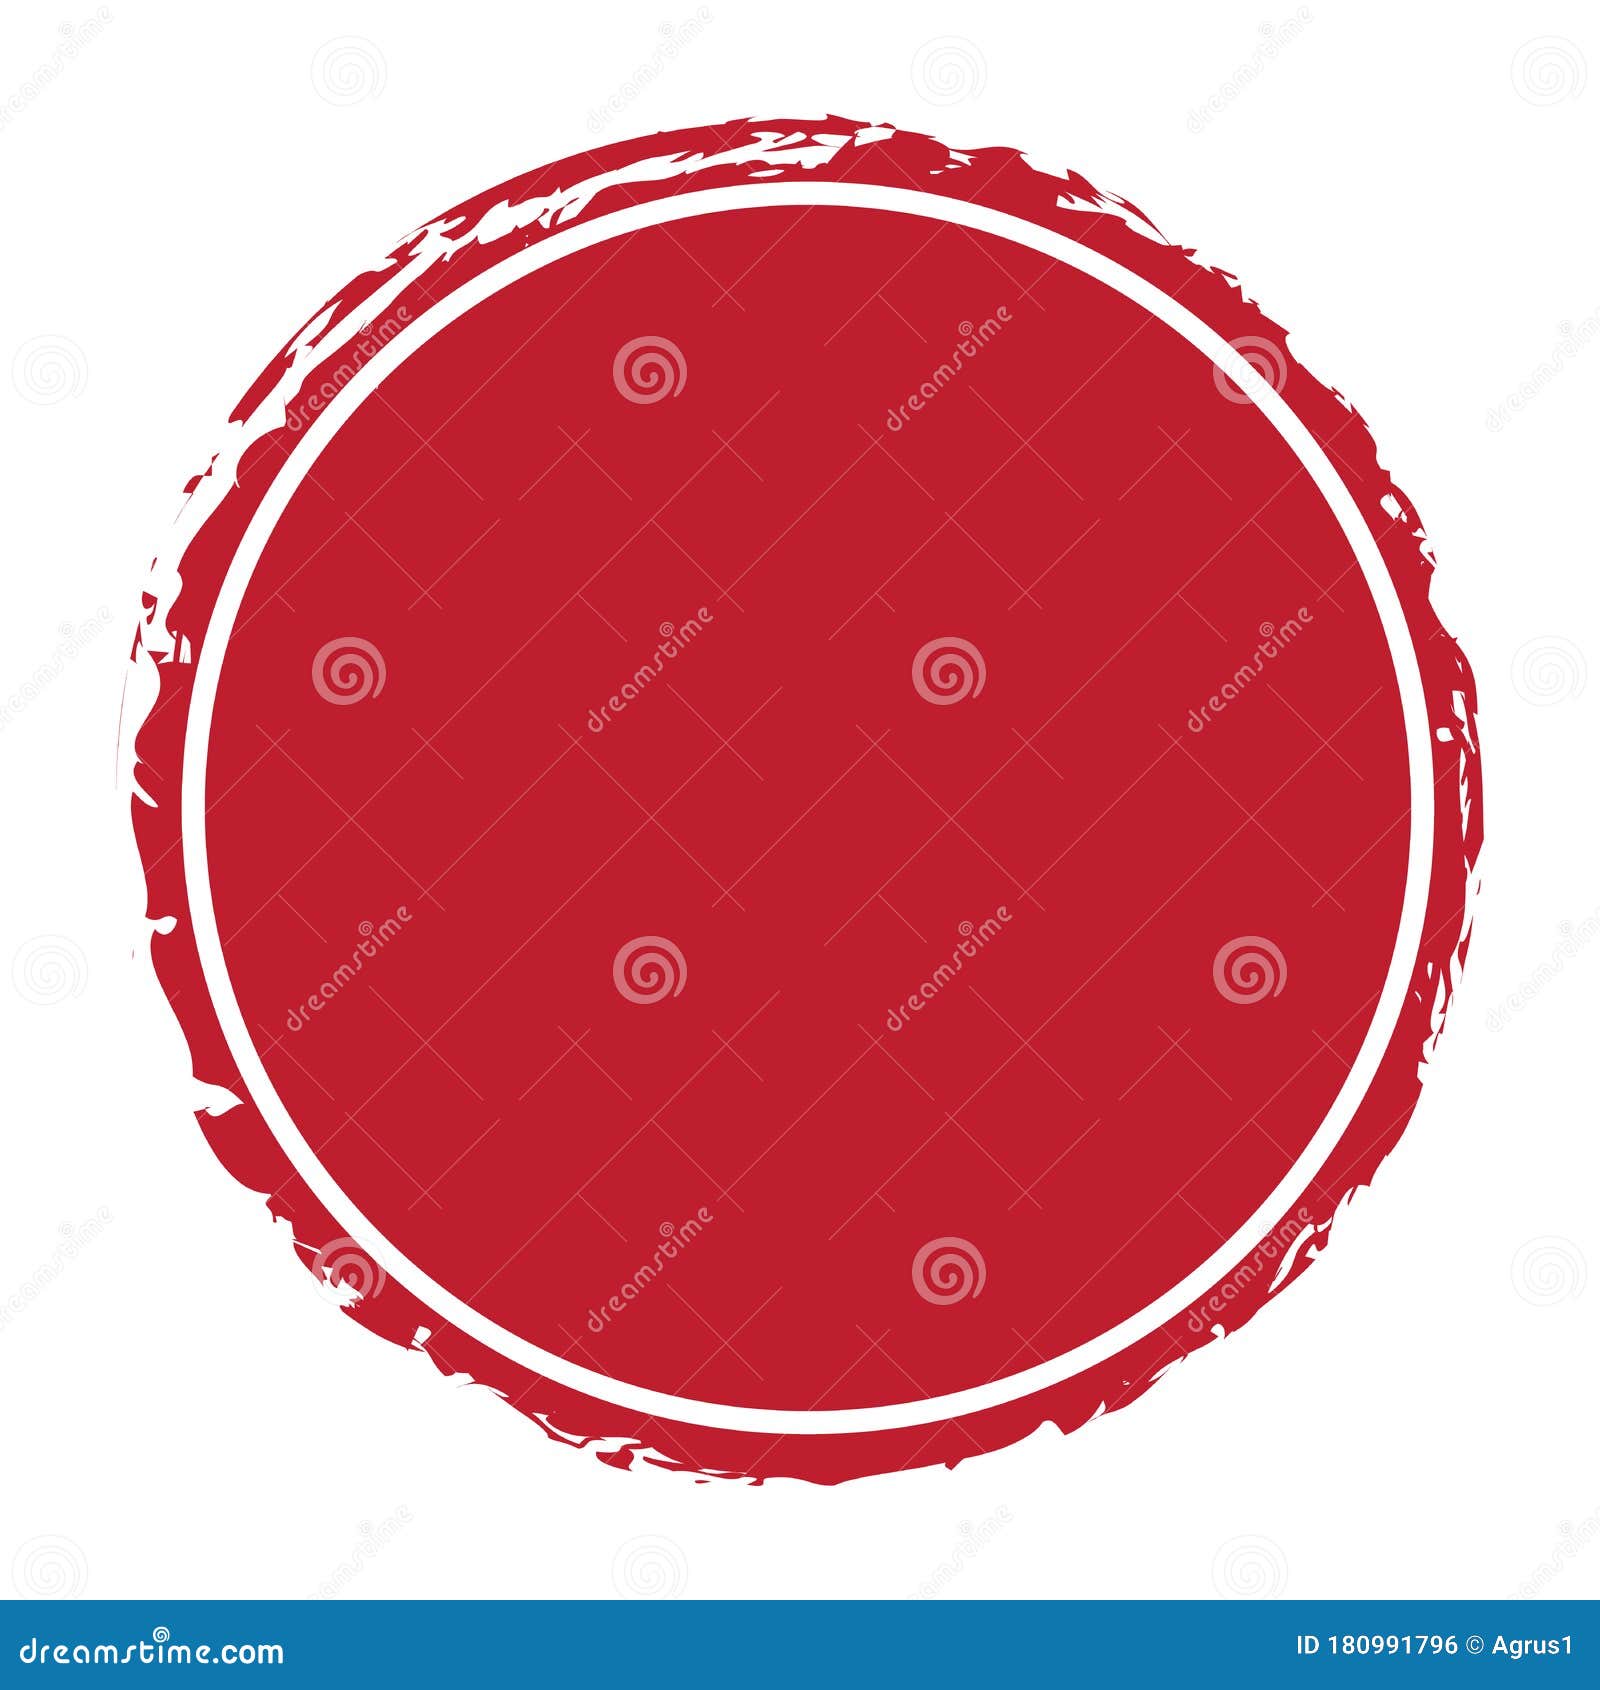 Nổi bật giữa những cờ và băng rôn thông thường với băng rôn tròn đỏ được vẽ bằng cọ trên nền trắng tinh tế. Sử dụng ảnh này để quảng bá thương hiệu hoặc sự kiện của bạn. Đây là một sự lựa chọn tuyệt vời cho những ai muốn tạo sự khác biệt.